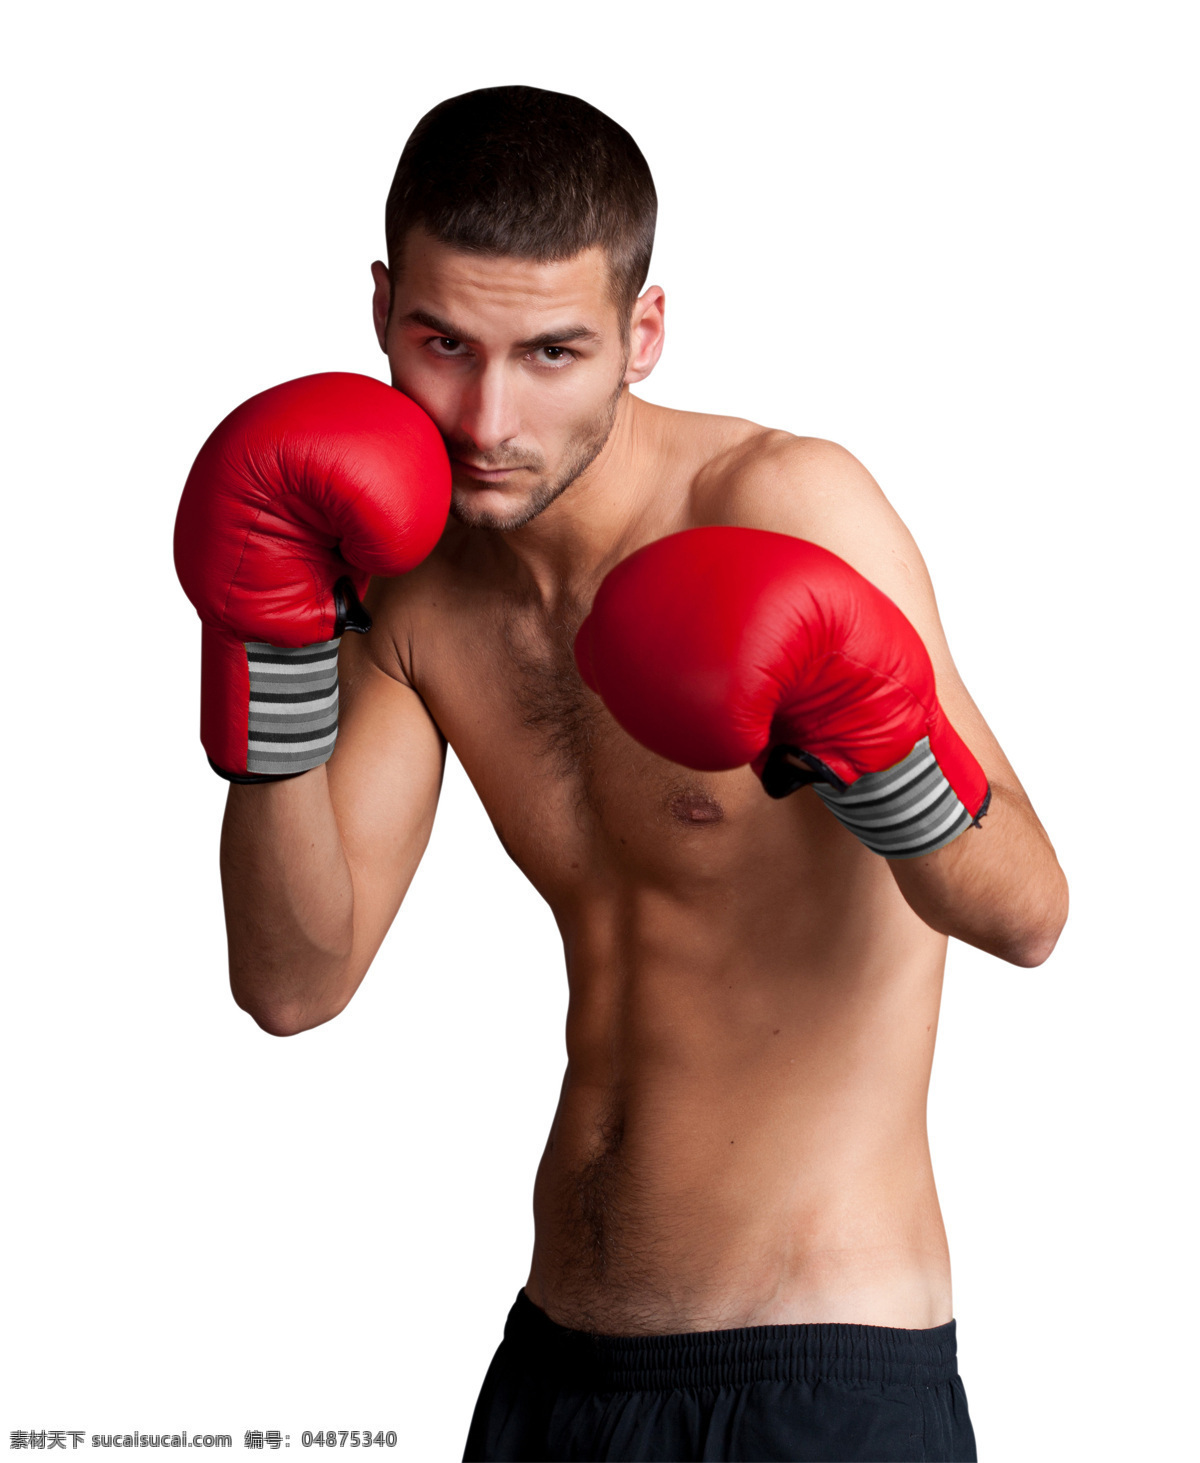 拳击 健身 男人 运动 外国男人 拳击人物 拳击健身 拳击手套 生活人物 美容健身 生活百科